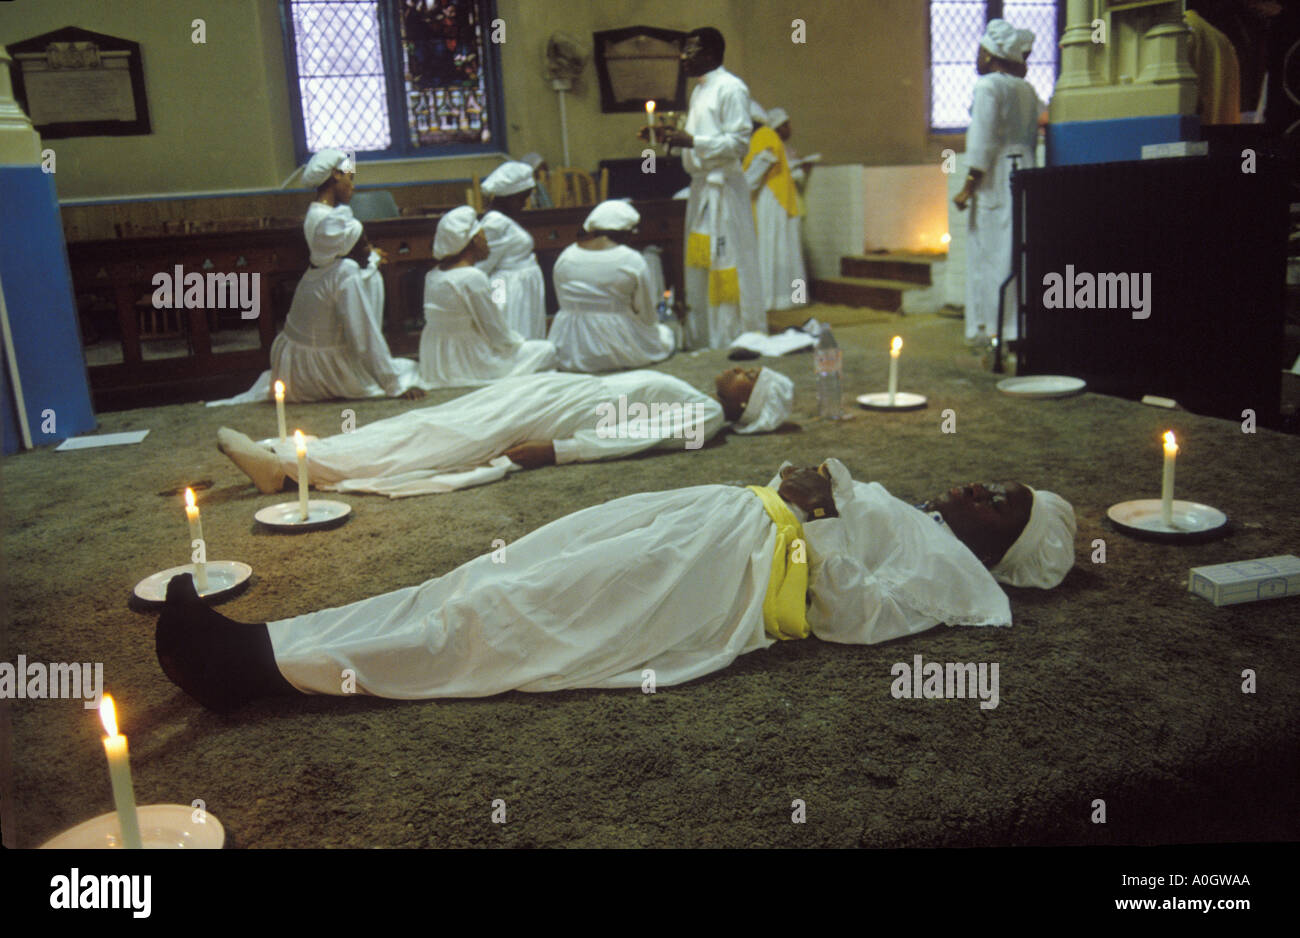 Yoruba UK. Sonntagsgottesfrauen in Trance, 'im Heiligen Geist' warten darauf, eine Botschaft vom Herrn zu empfangen. Himmlische Kirche. Islington London 1990er Jahre Stockfoto